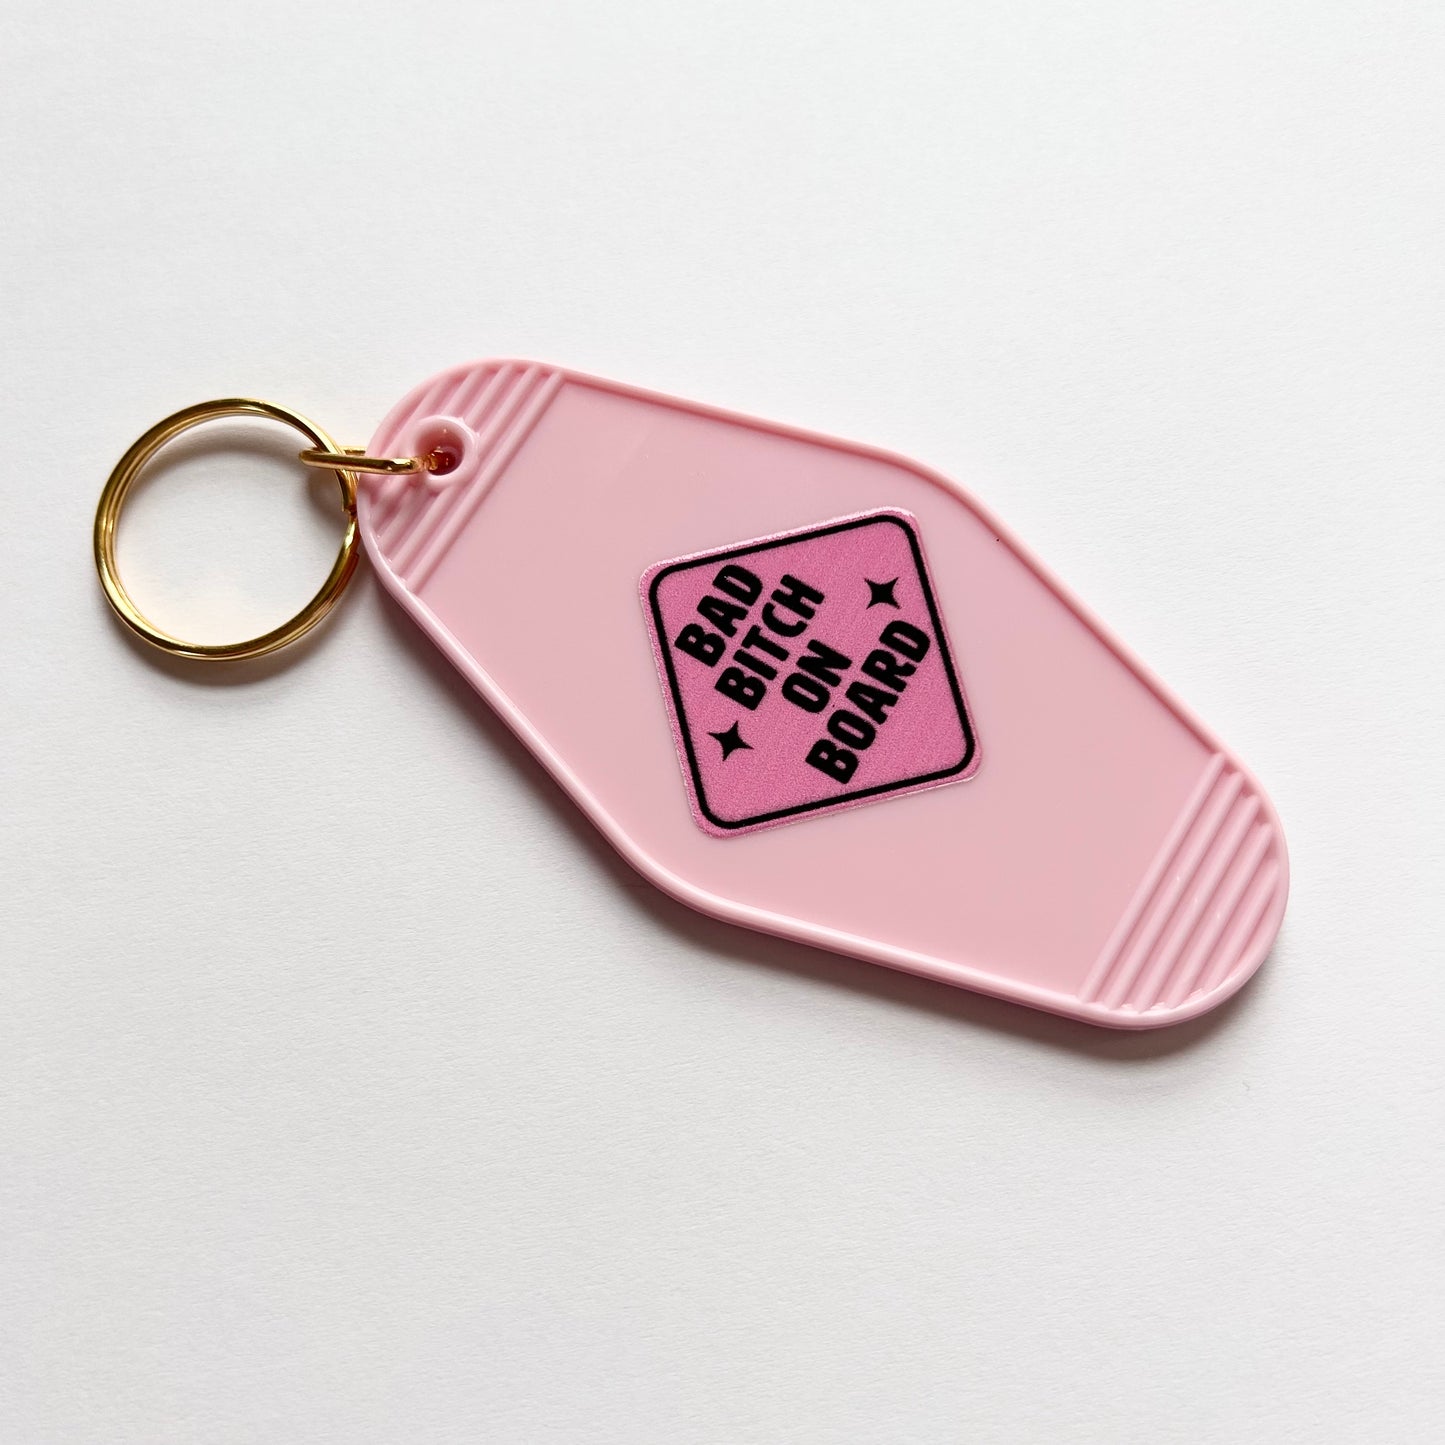 Bad Bitch on Board - Cute Pink Motel Keychain